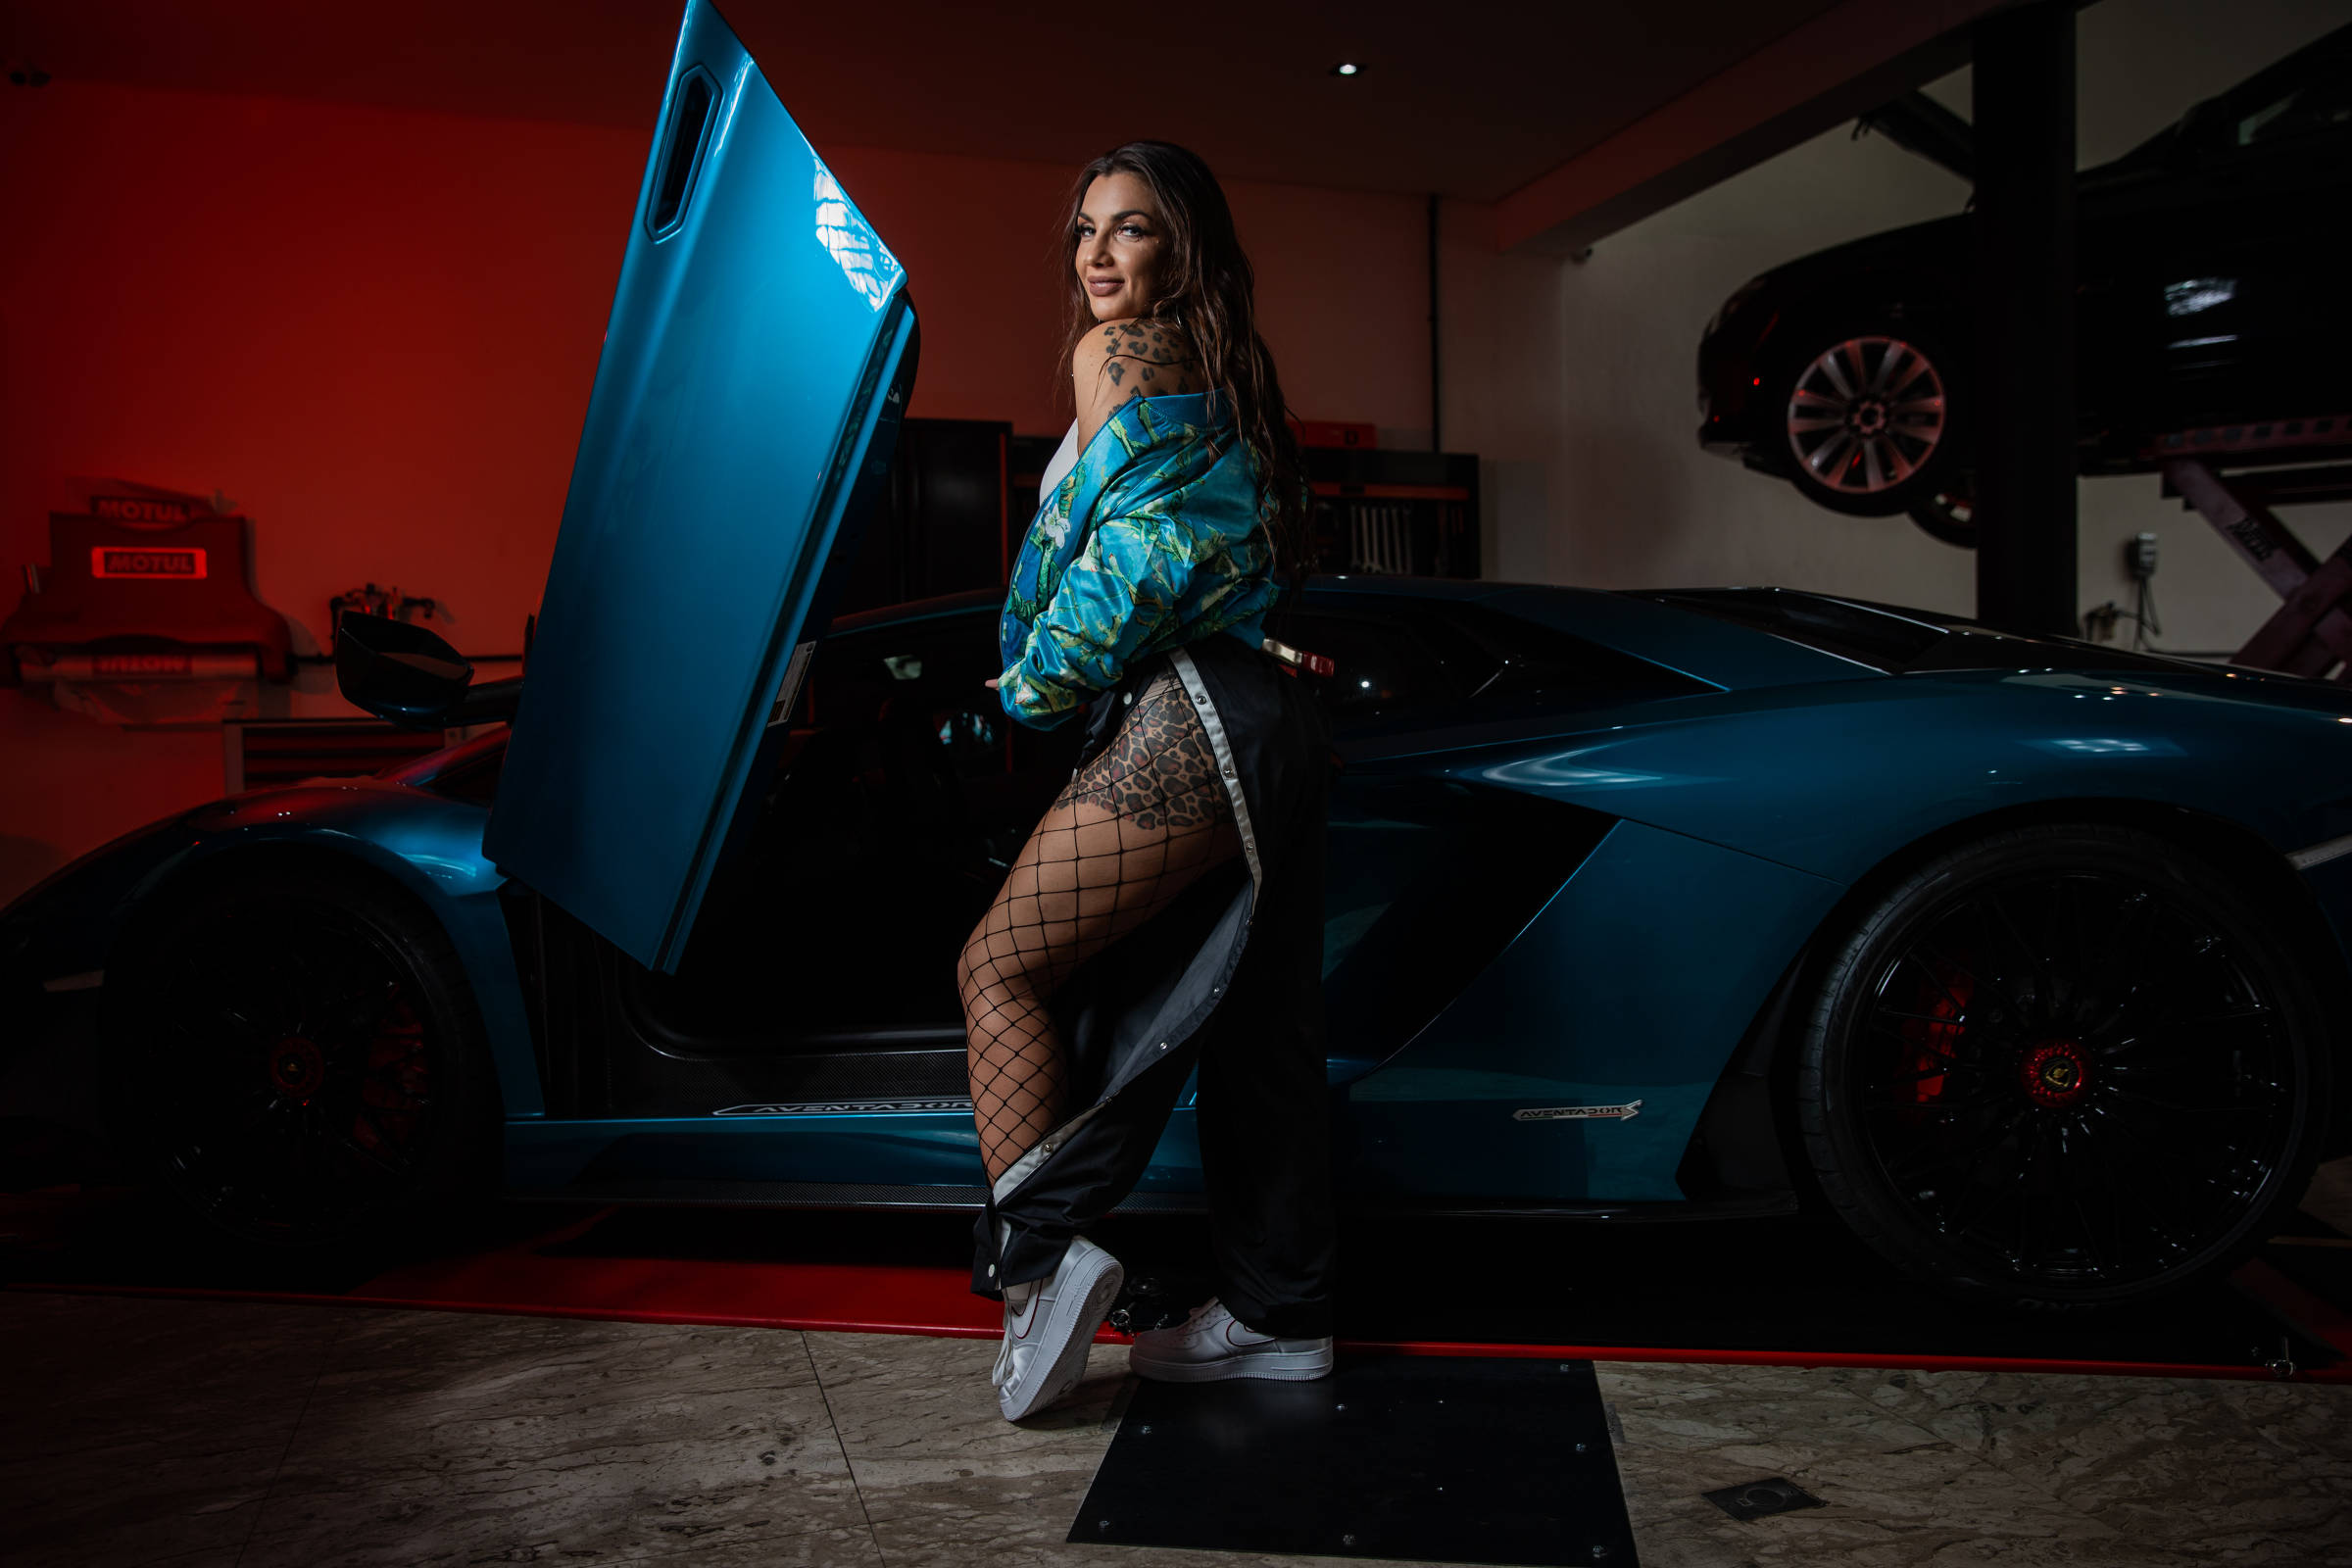 Elettra Lamborghini quer se desvencilhar do sobrenome e se firmar na música  - 20/10/2018 - Ilustrada - Folha